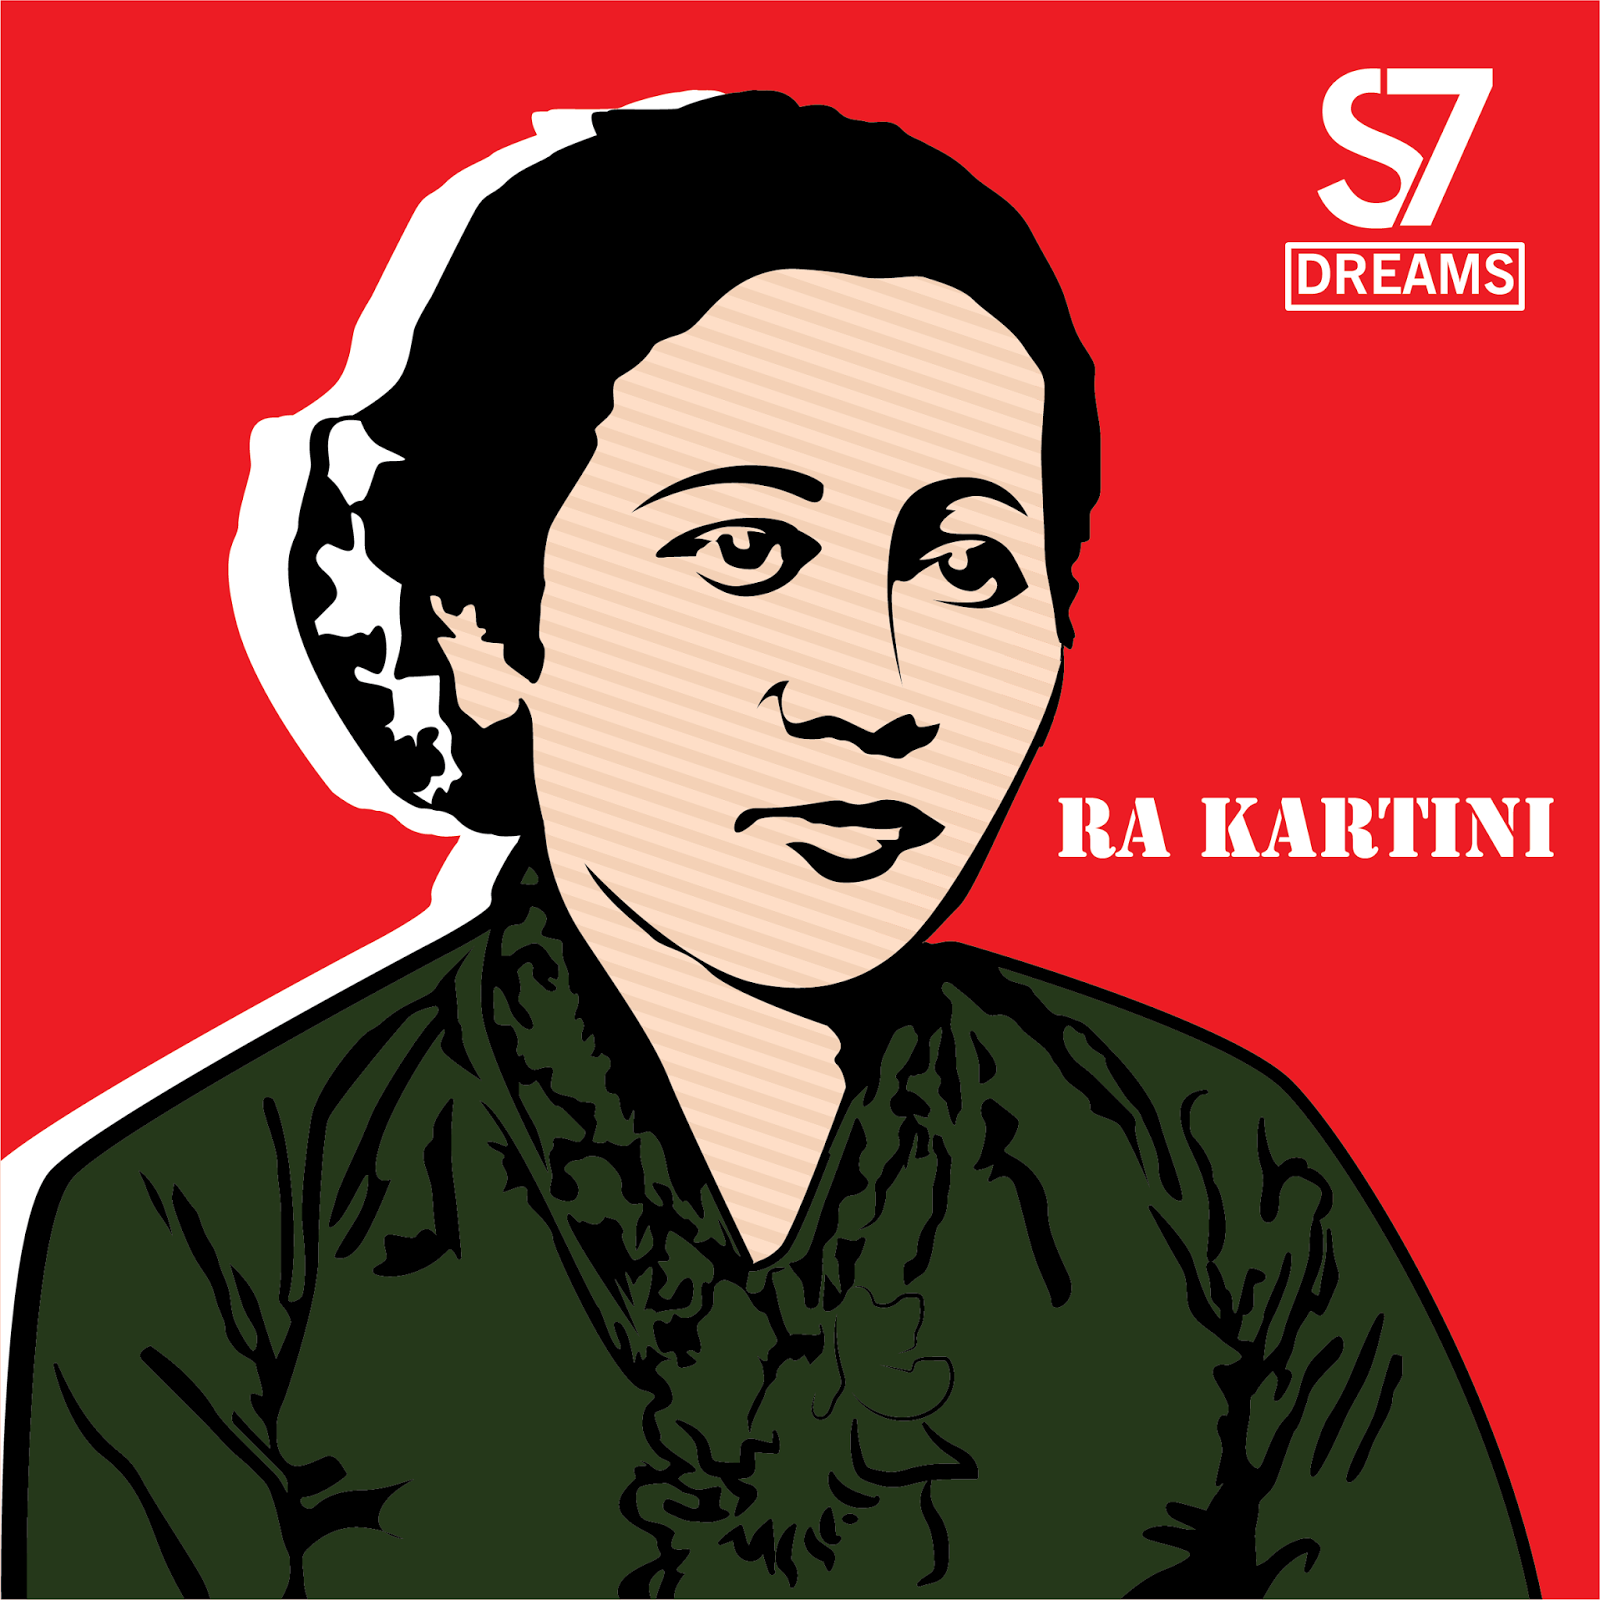 Download RA Kartini Logo Vector - S7 Dreams